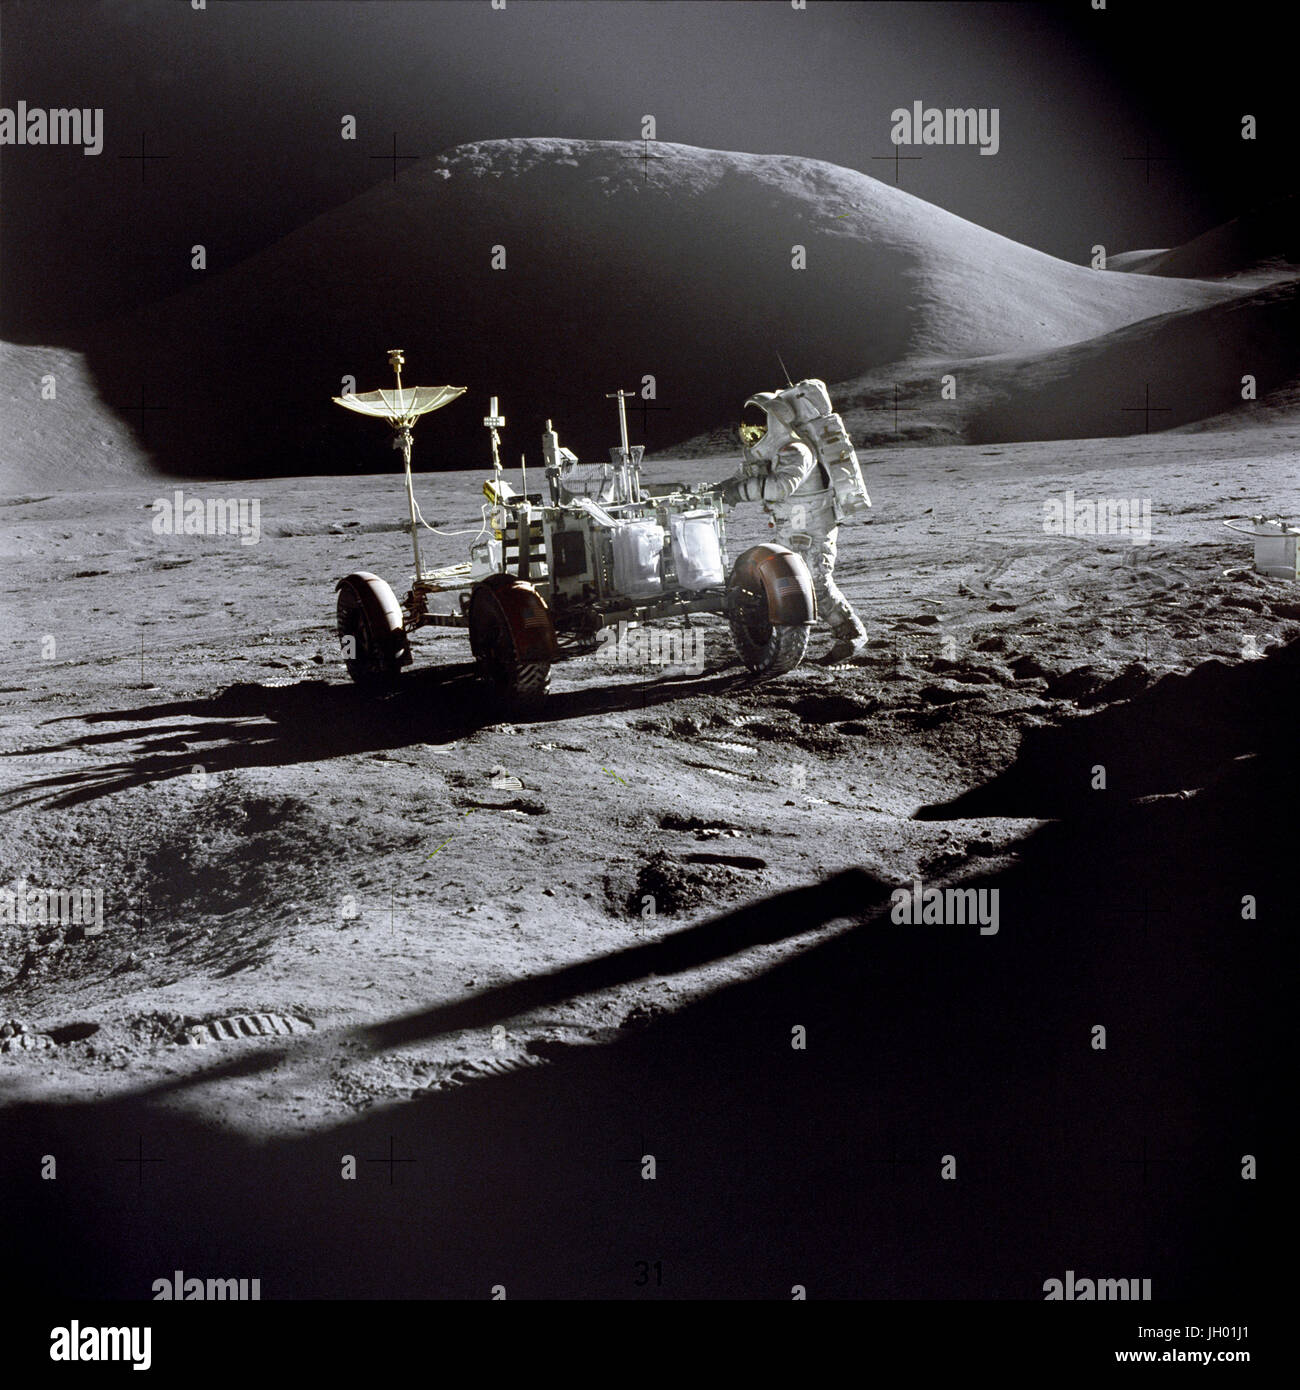 Astronaut James B. Irwin, Pilot der Mondlandefähre, arbeitet am Lunar Roving Vehicle während der ersten Apollo 15 lunar Surface Extravehicular Tätigkeit (EVA-1) an den Hadley-Apennin-Landeplatz. Der Schatten der Mondlandefähre "Falcon" steht im Vordergrund. Nordosten, blickt mit Mount Hadley im Hintergrund. Fotograf: NASA / David Stockfoto